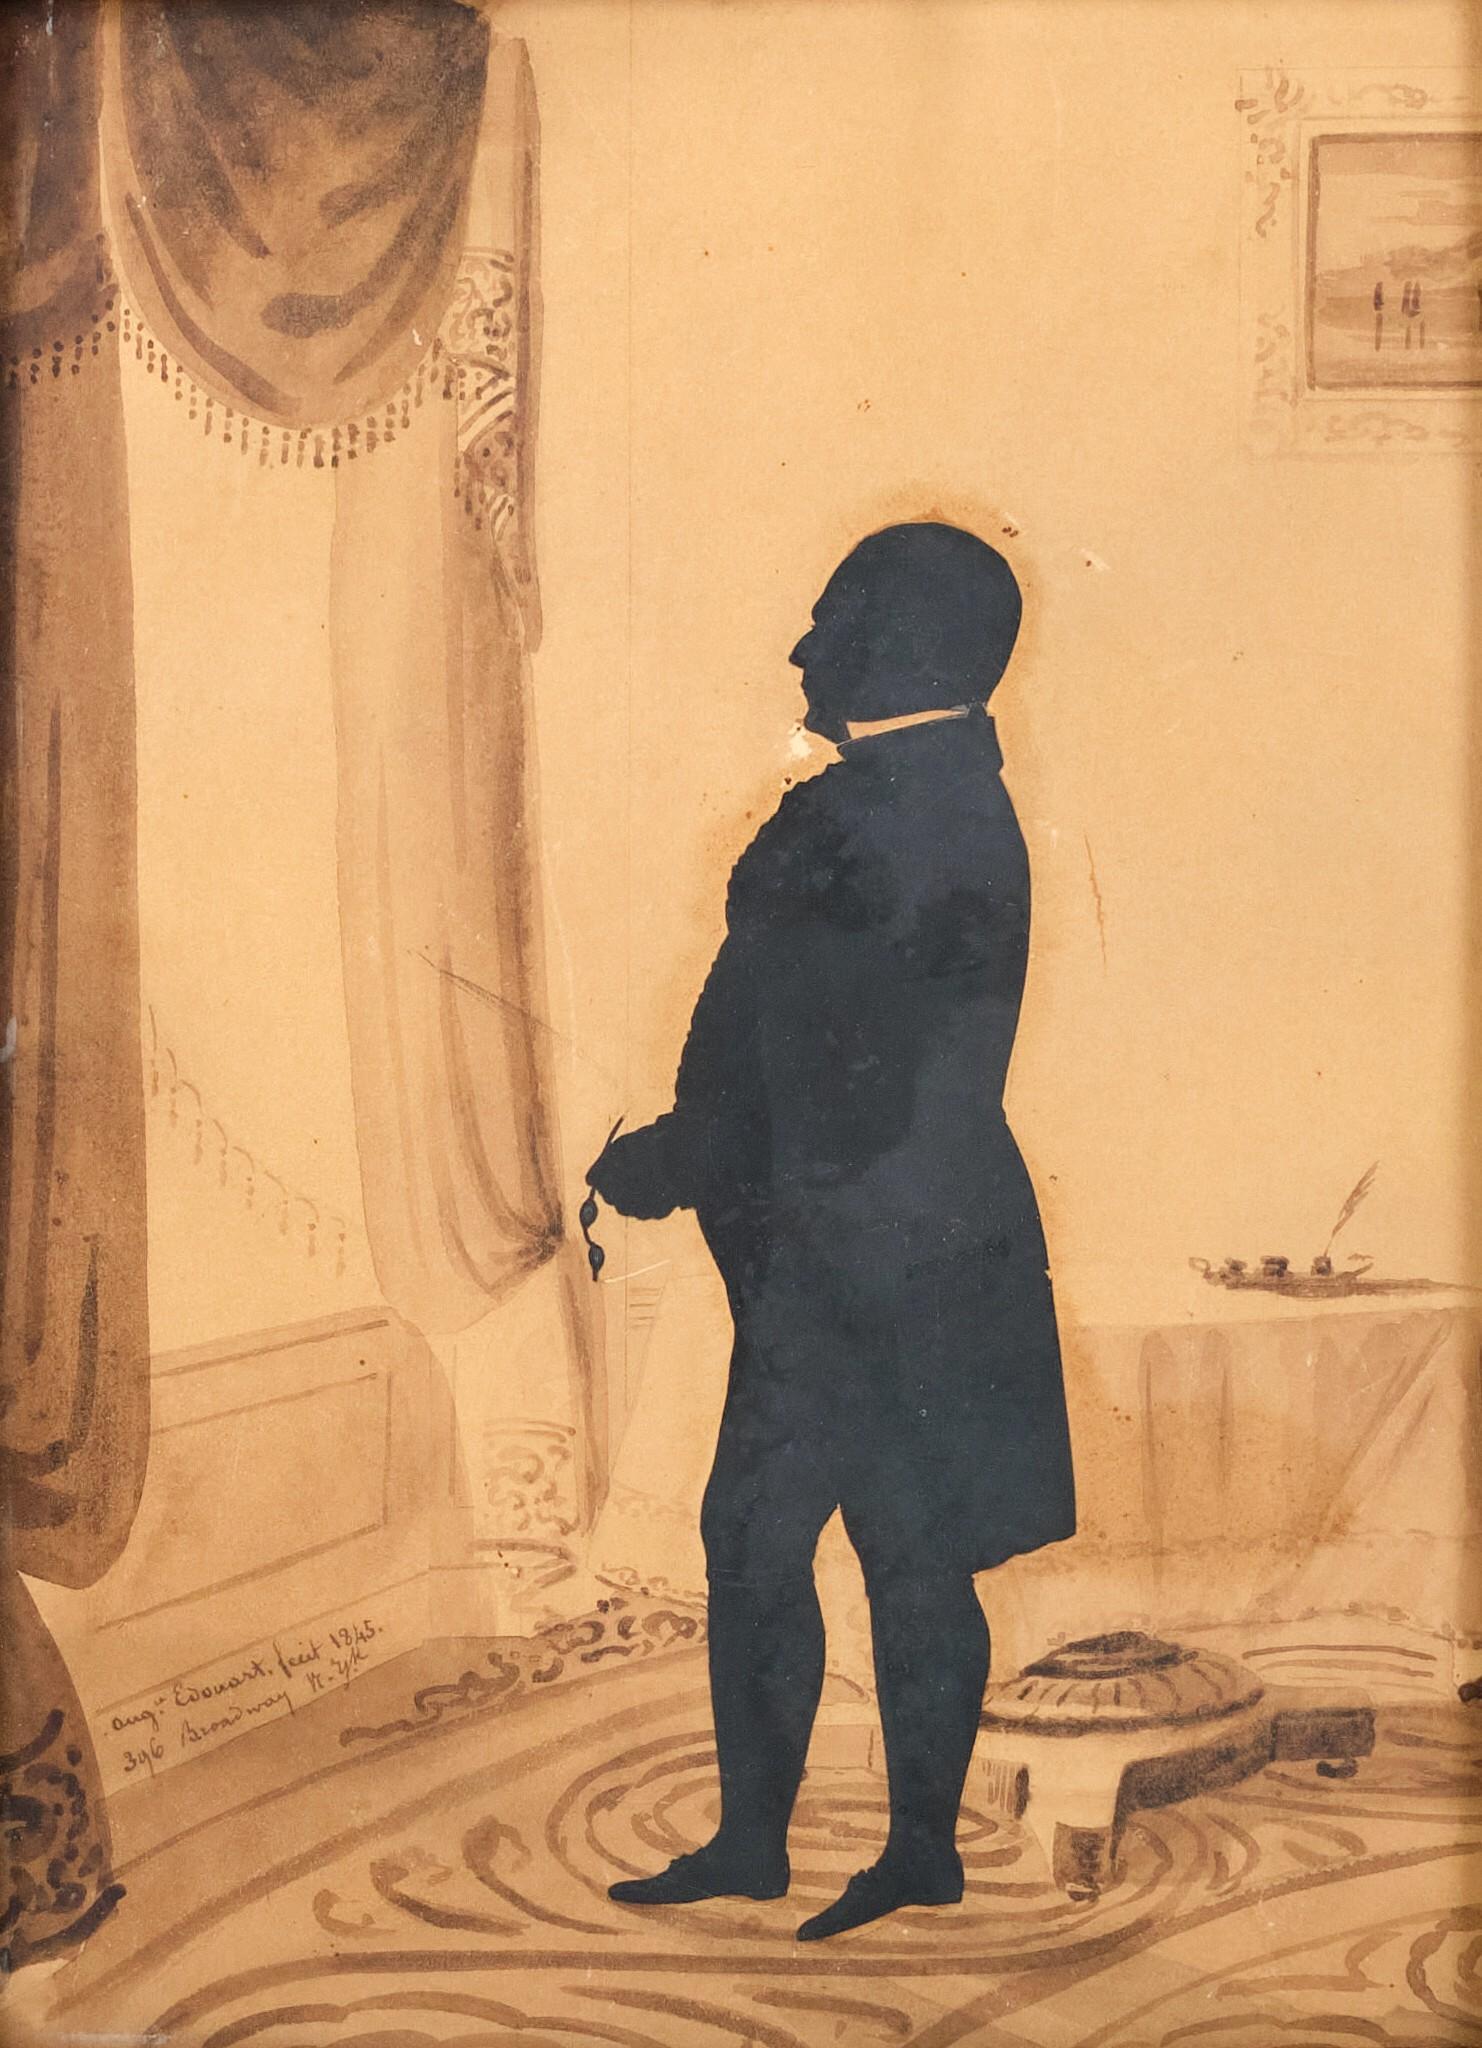 Très bonne silhouette américaine du XIXe siècle de la période classique / Empire, taillée aux ciseaux par Auguste Edouart, représentant la figure en pied d'un homme important de New York, lunettes à la main, regardant par la fenêtre depuis